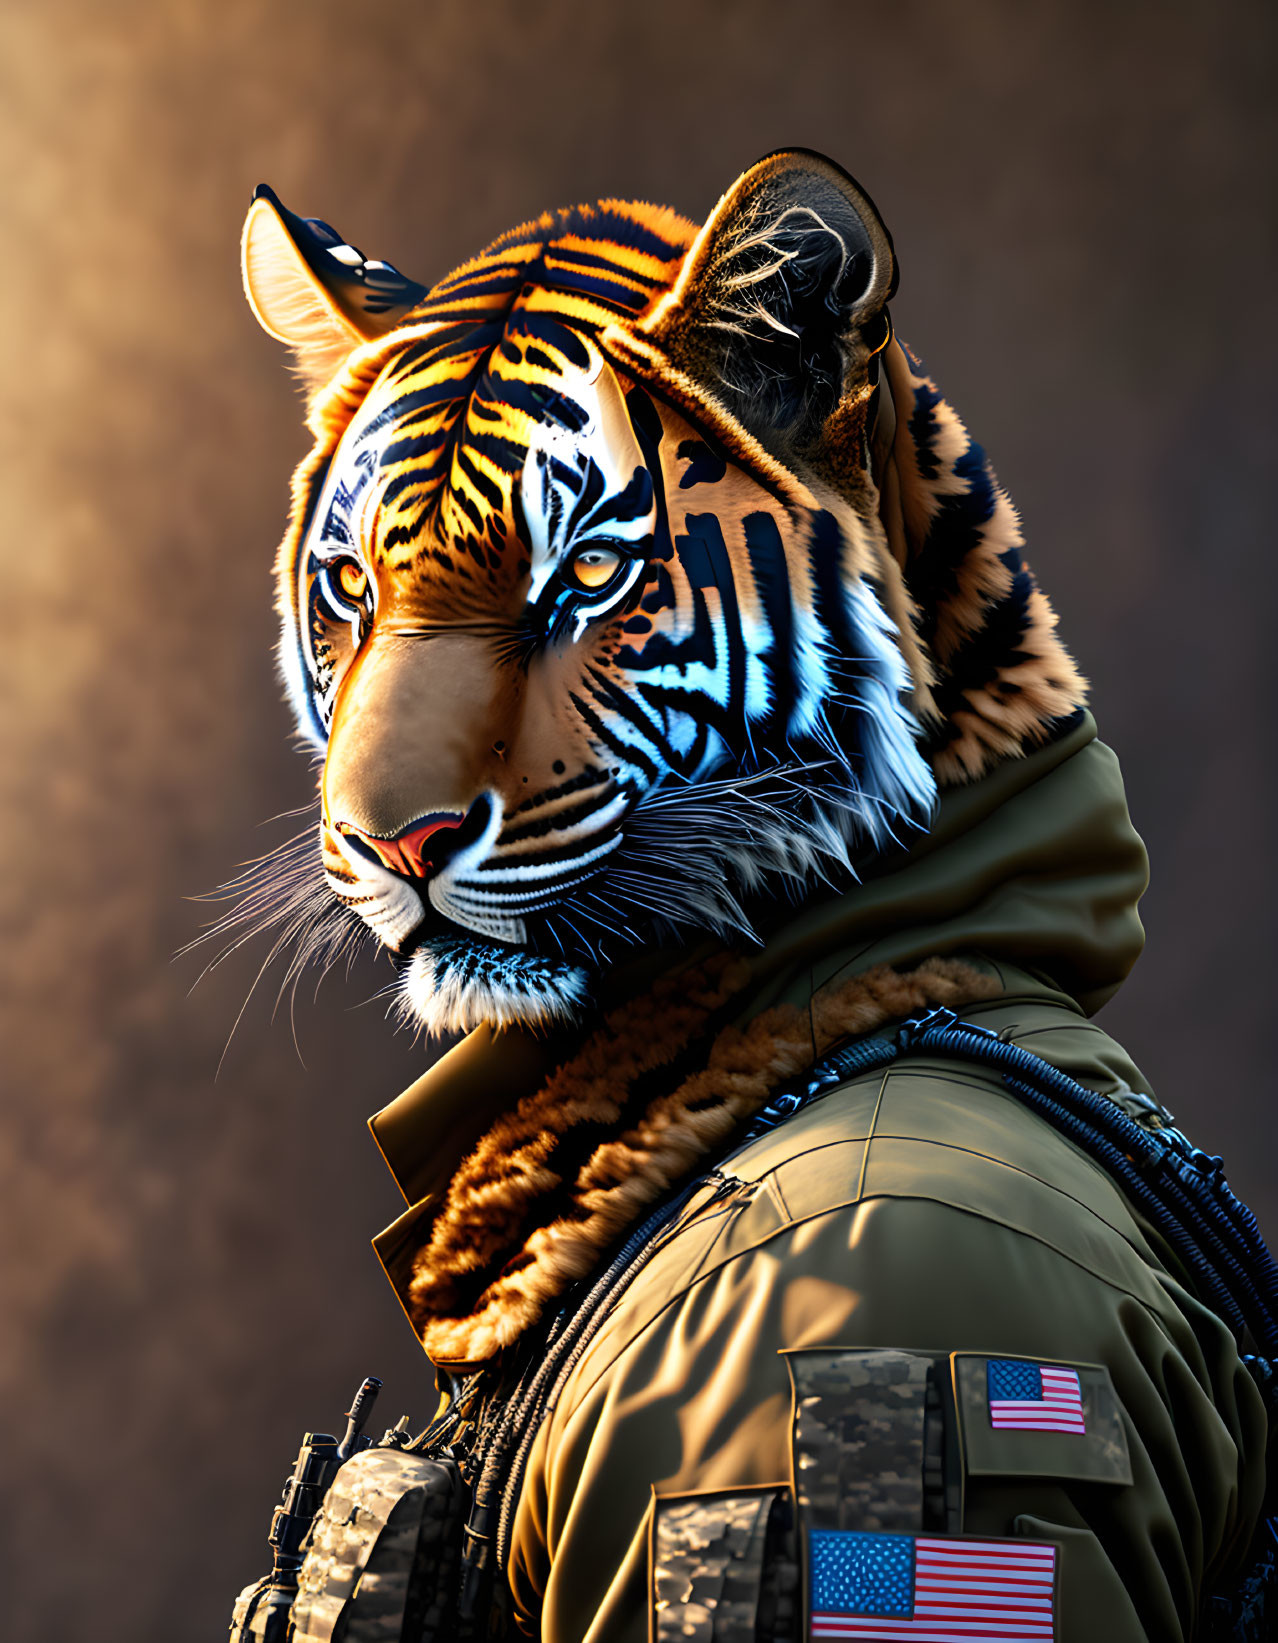 Tiger commando